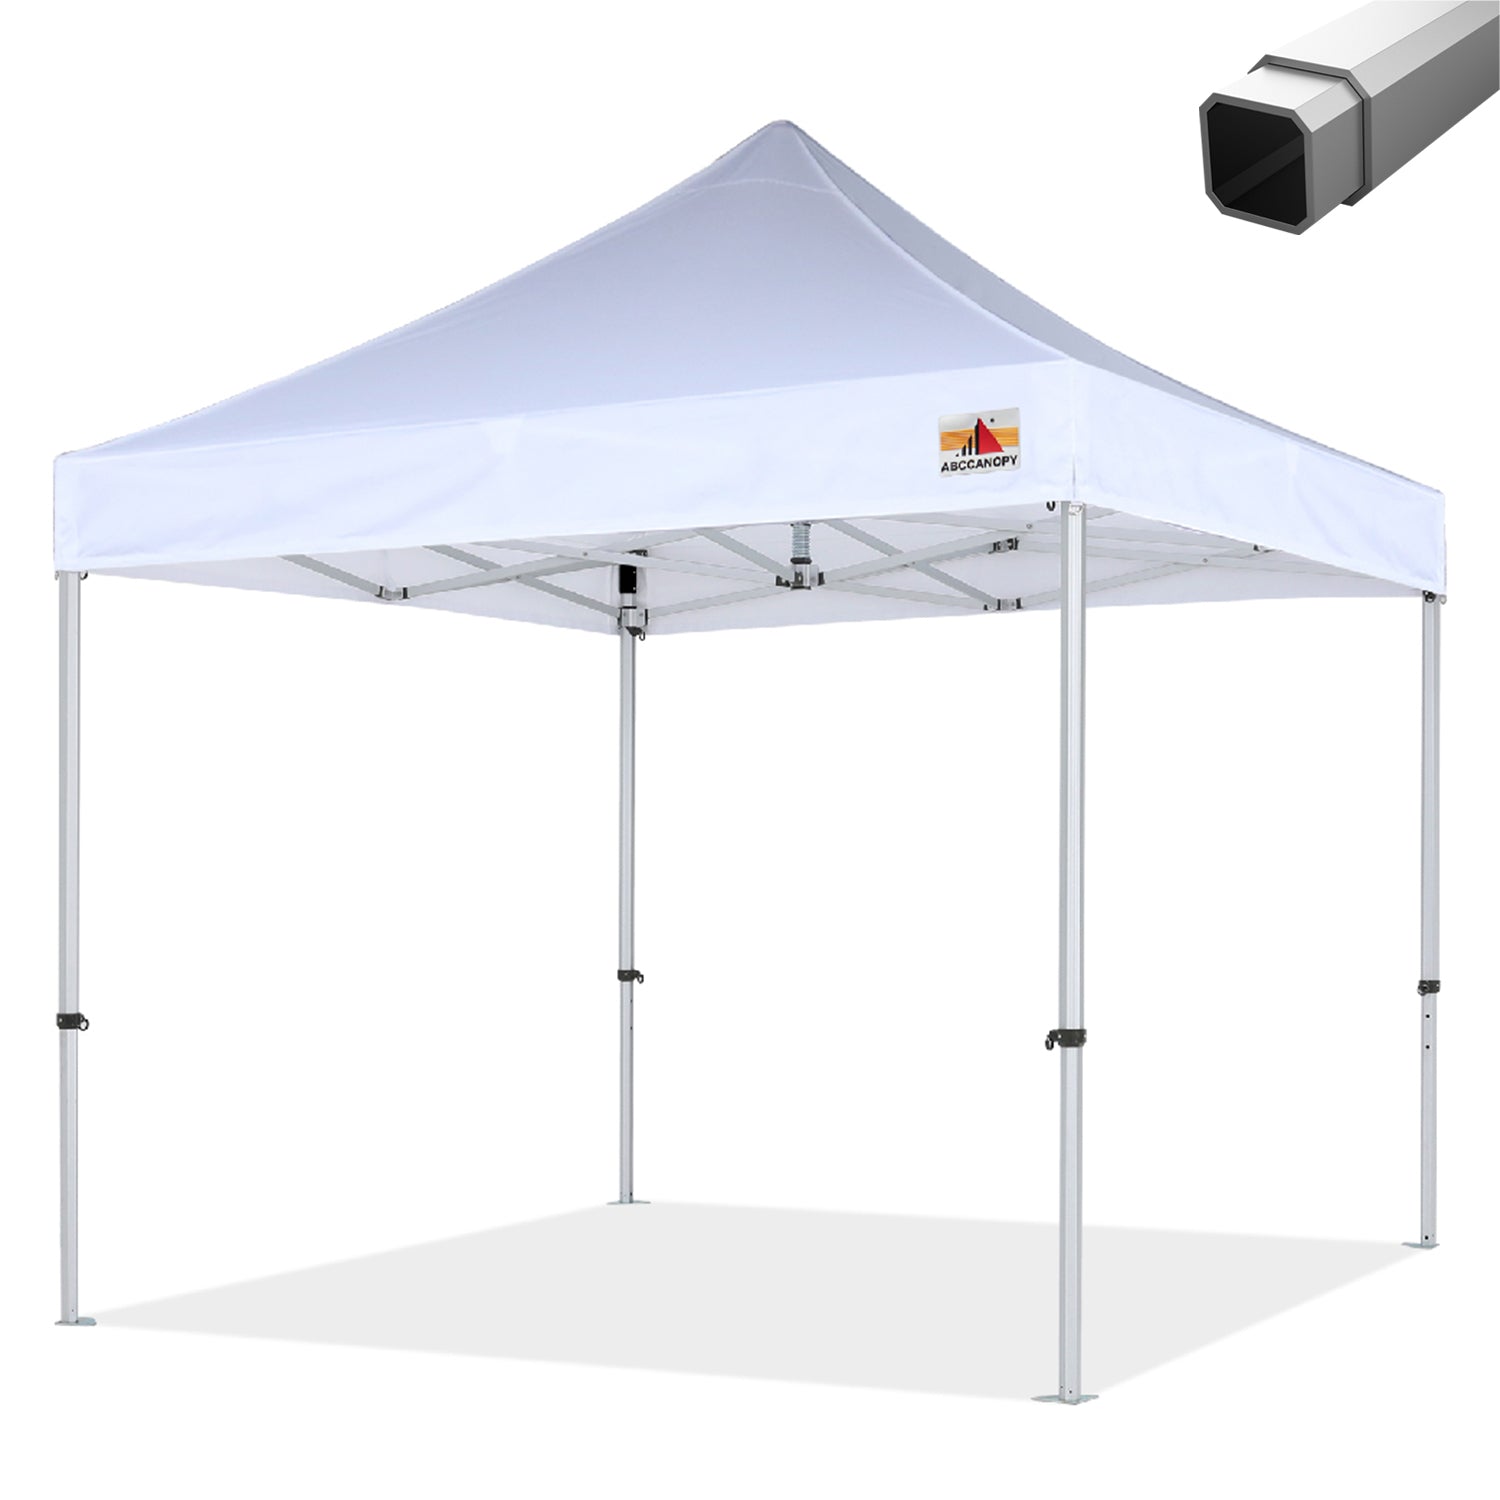 S3 Professional Octagon Super Heavy Duty Aluminum Canopy Tent